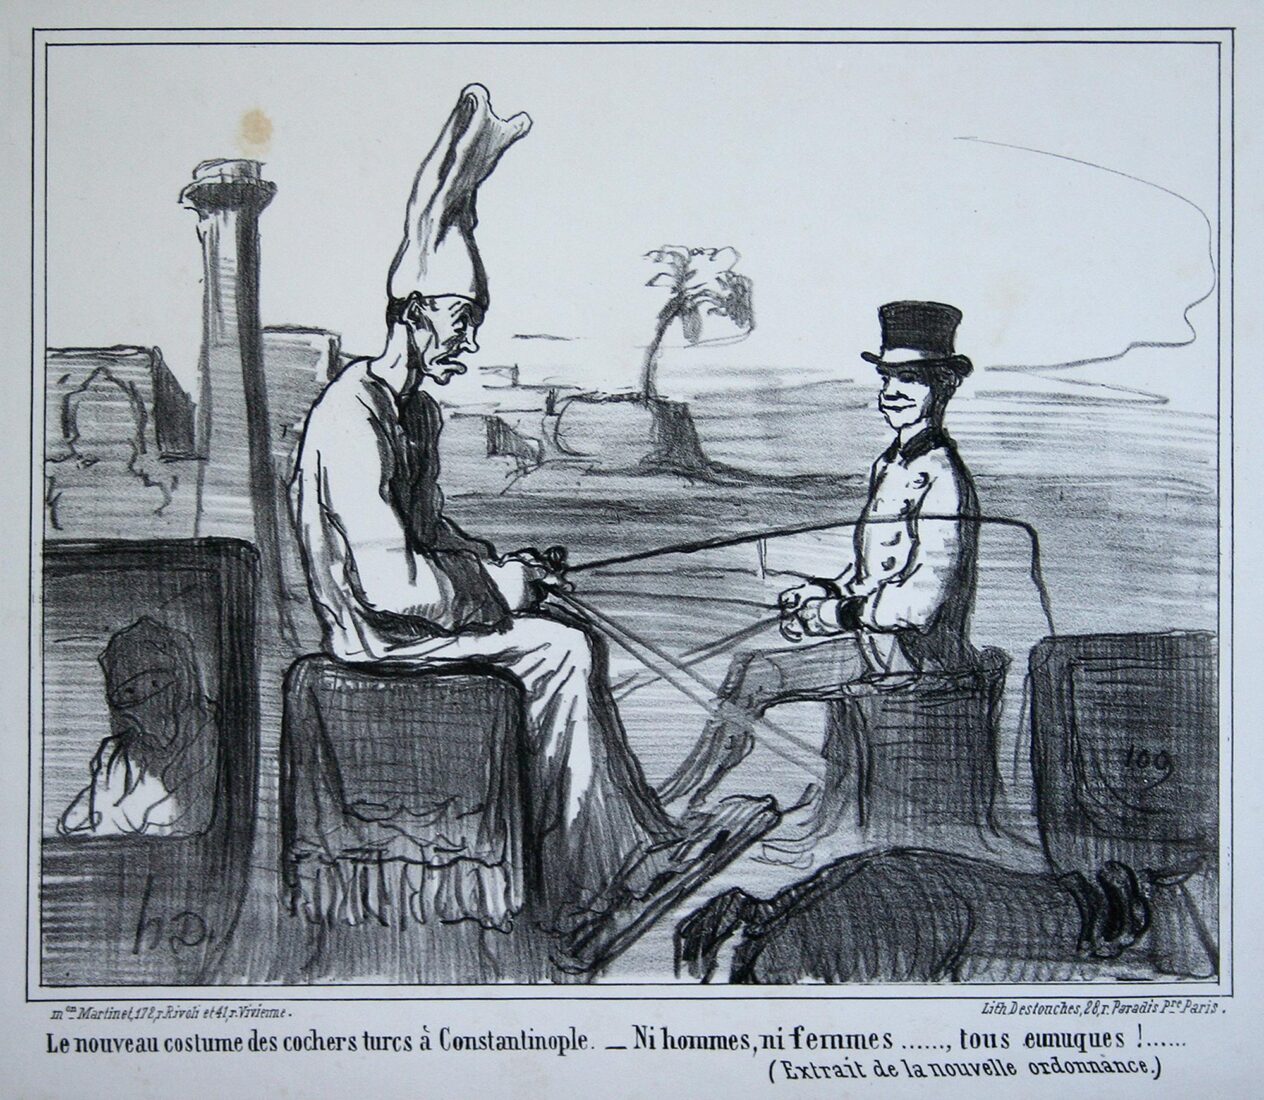 “Η νέα στολή των αμαξάδων στην Κωνσταντινούπολη. Ούτε άνδρες ούτε γυναίκες, όλοι ευνούχοι” - Daumier Honore